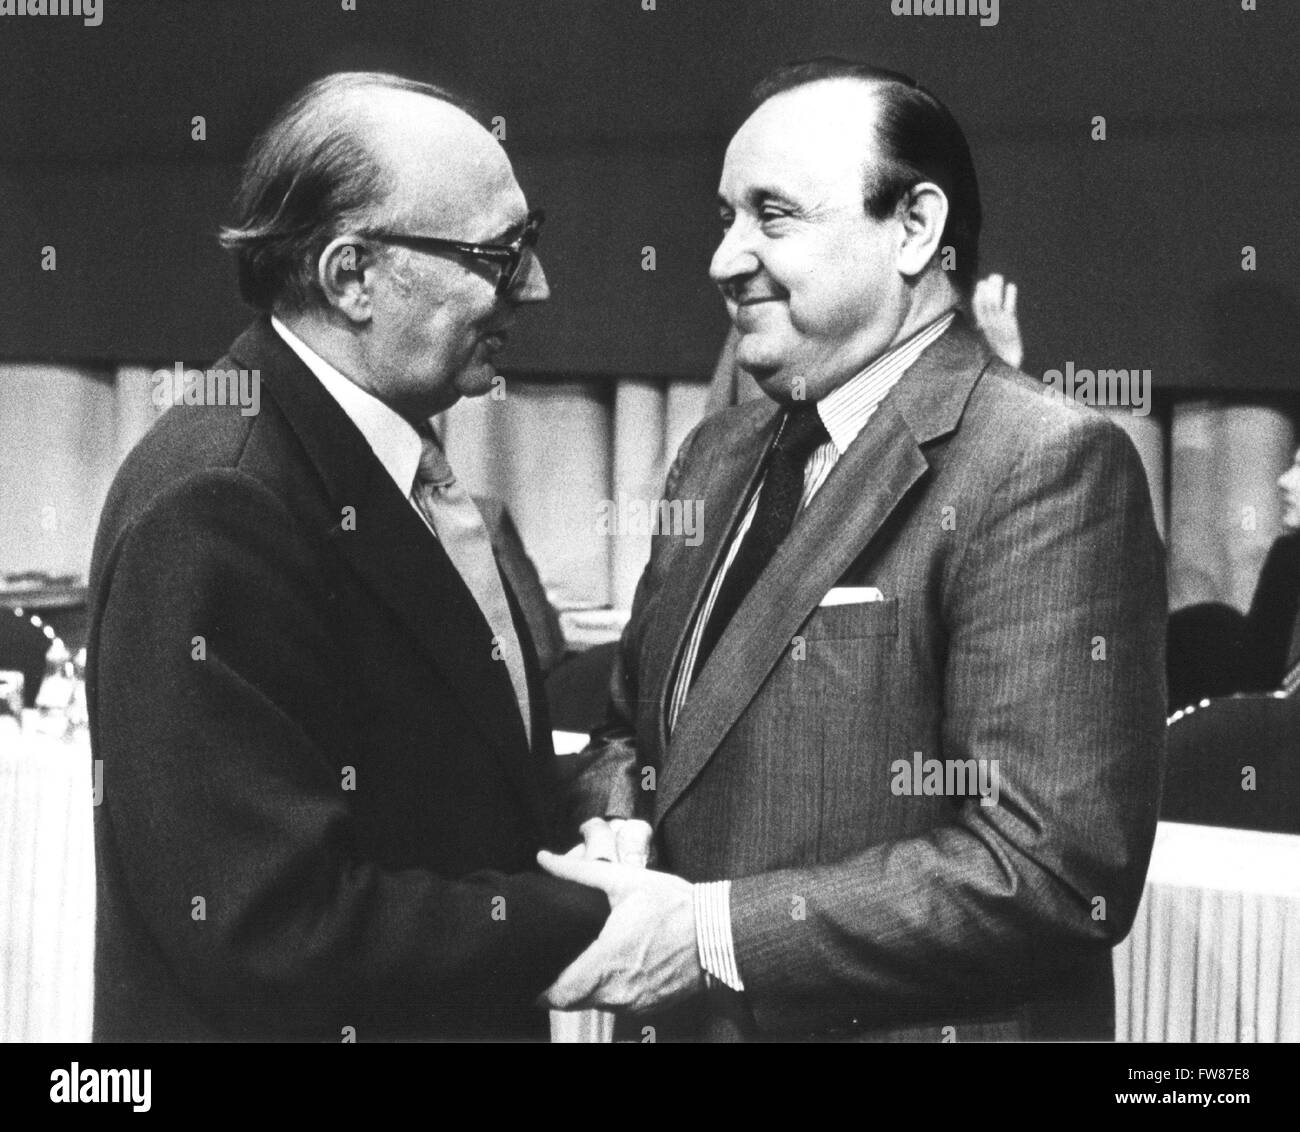 Wolfgang Mischnick (l) félicite le ministre des affaires étrangères, Hans-Dietrich Genscher (r), qui a été élu le 01 octobre 1974 en tant que nouveau président du FDP. Banque D'Images